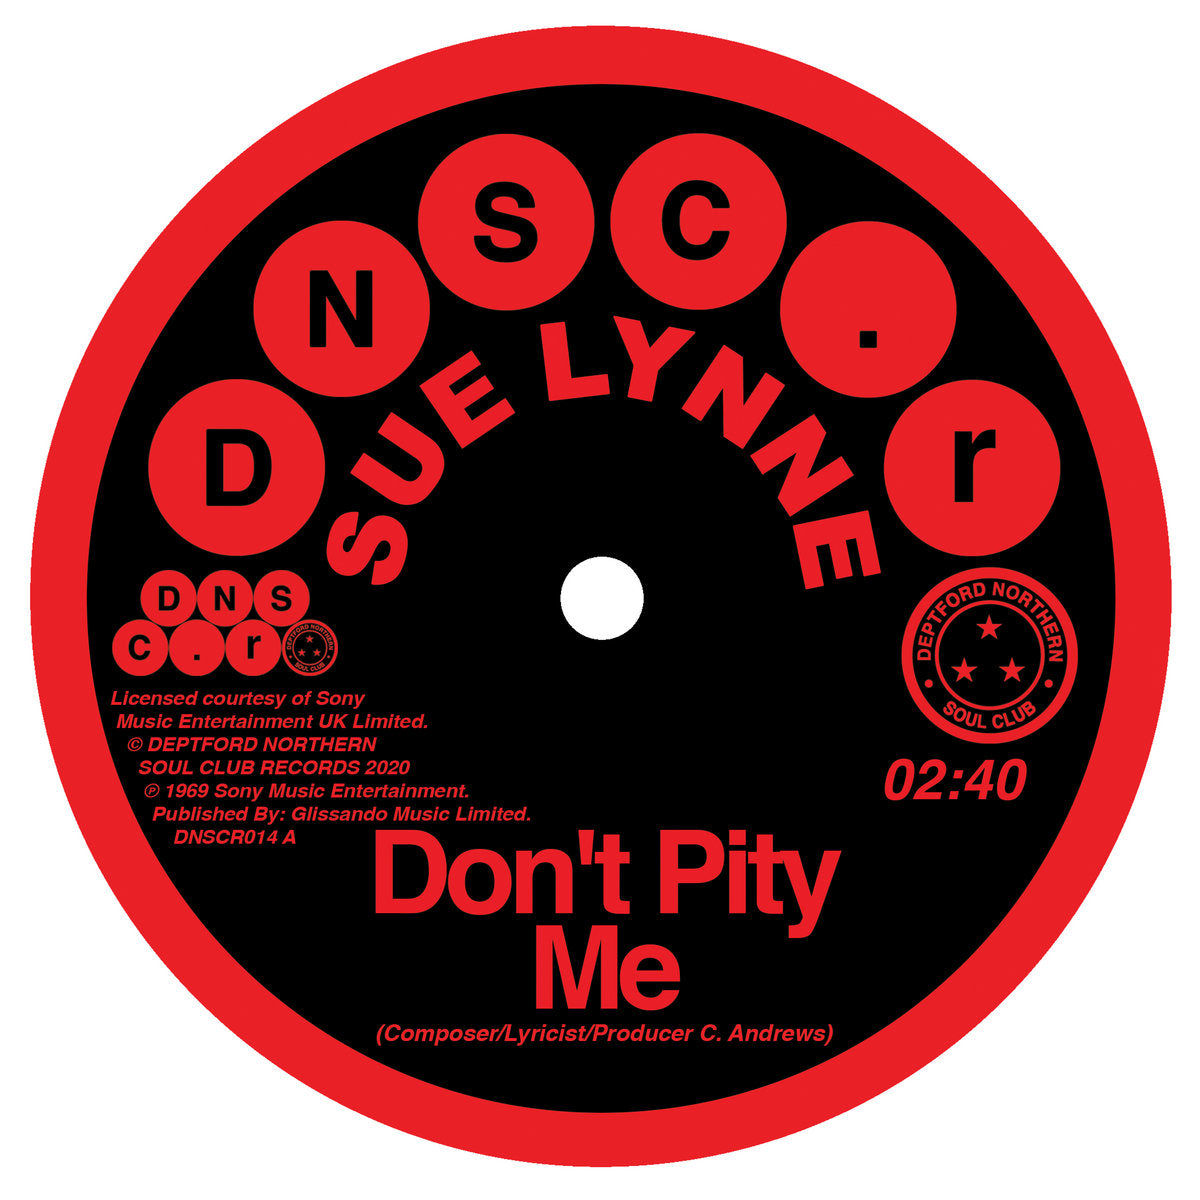 SUE LYNNE - Don't Pity Me / Don't Pity Me (Mono Version) - 7" - Vinyl